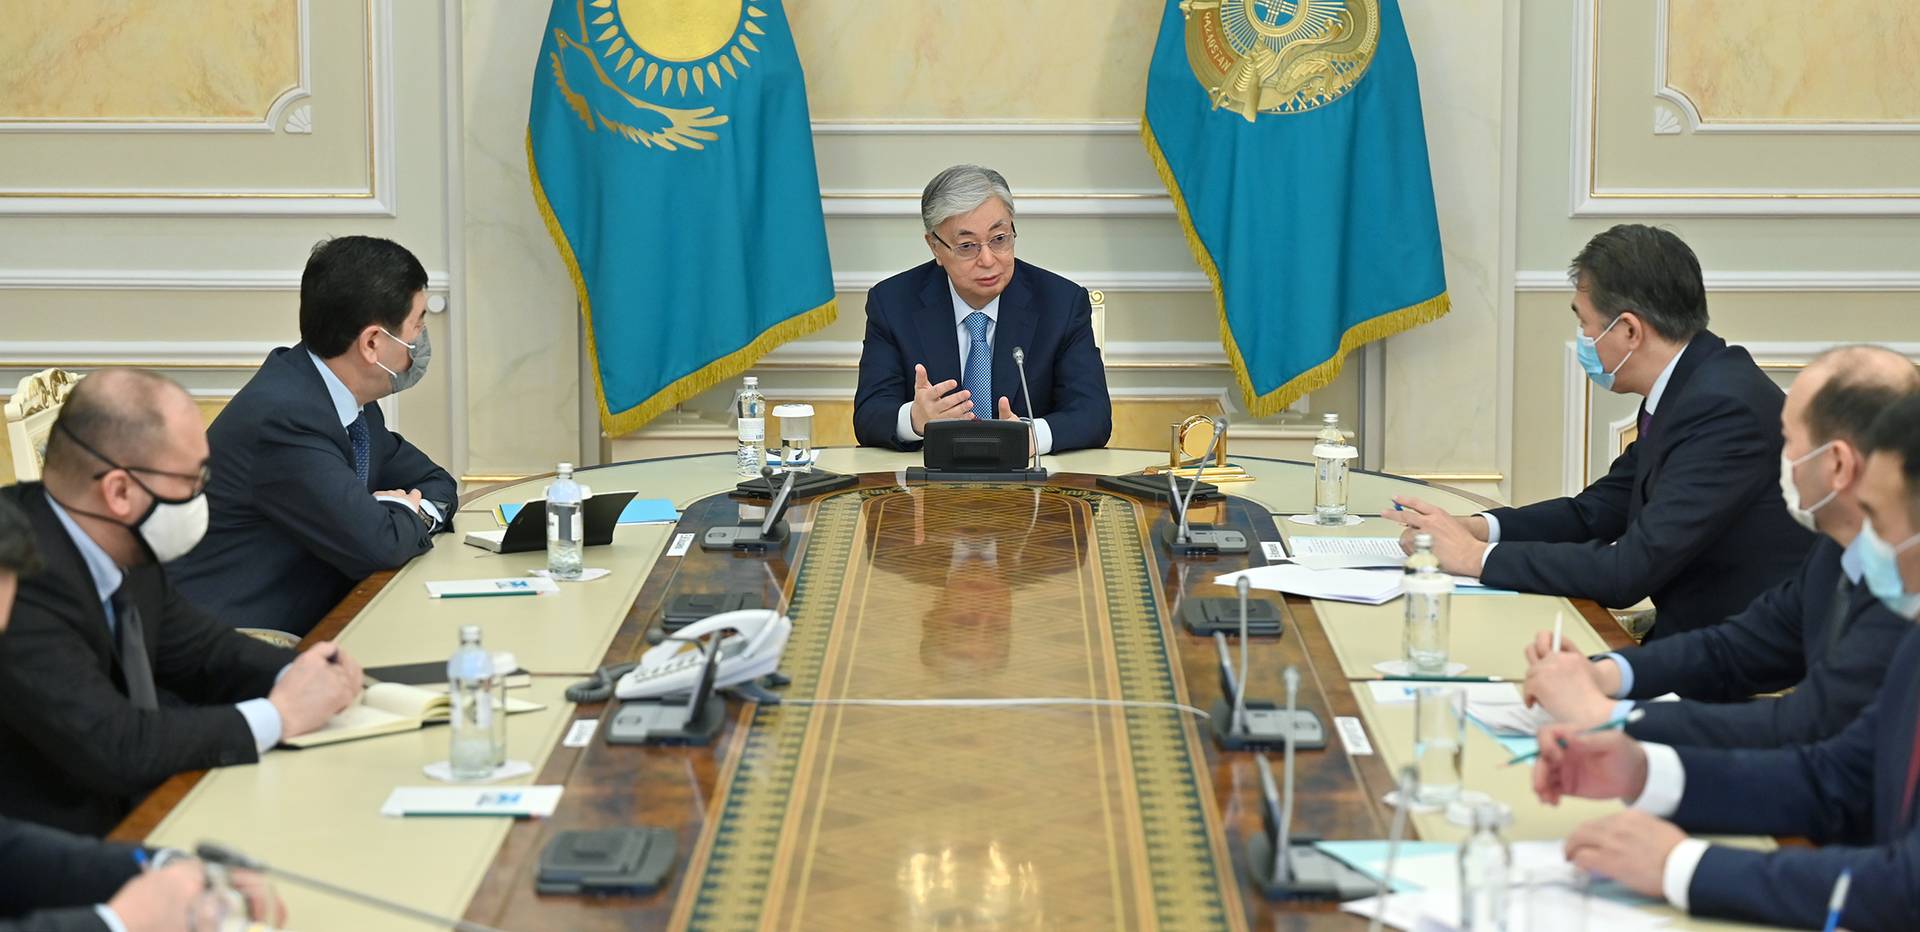 Оперативное заседани штаба во главе с президентом Казахстана Касым-Жомартом Токаевым